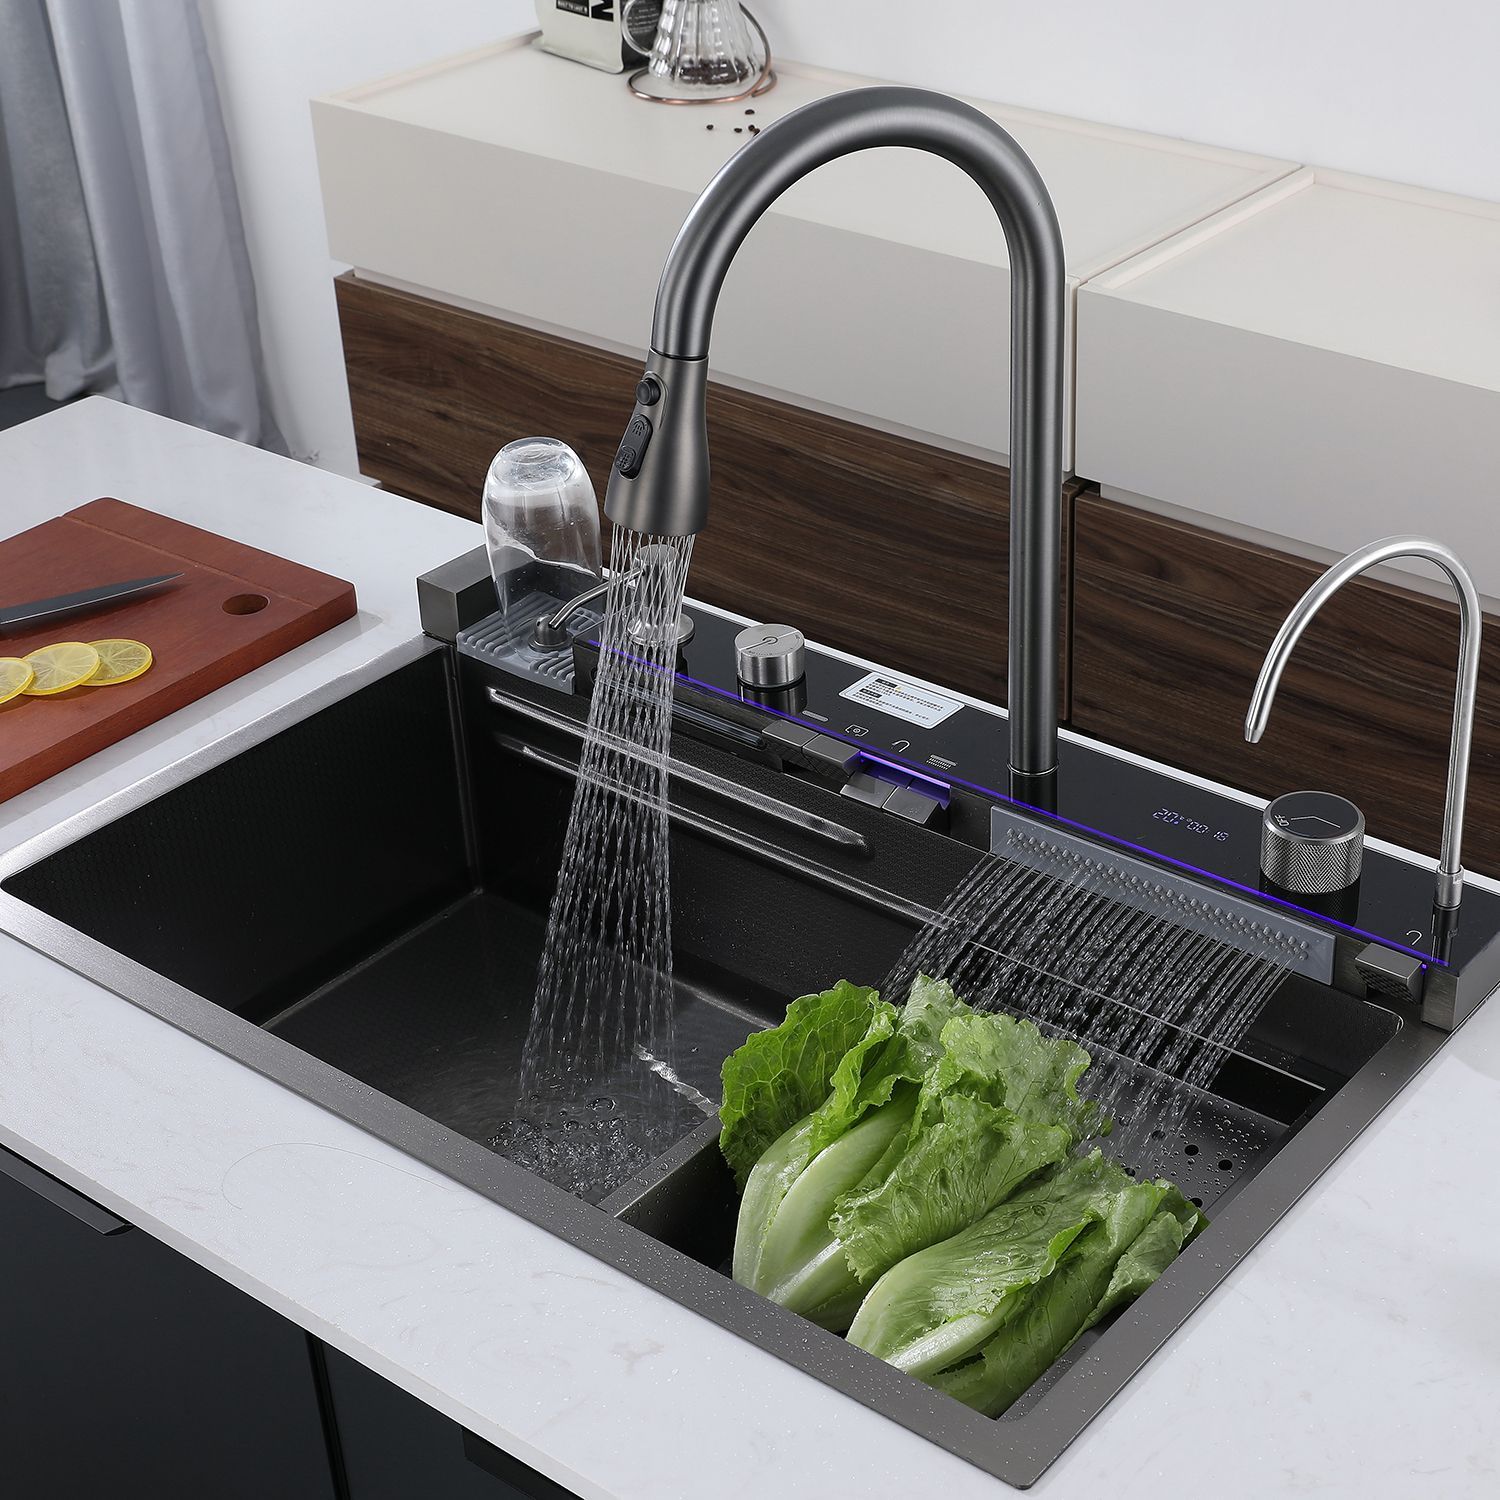 Мойка водопад купить. Кухонная мойка с водопадом. BOELON Luxury Kitchen Sink with Digital display and Waterfall Design. Многофункциональная кухонная мойка. Современные раковины для кухни многофункциональная.